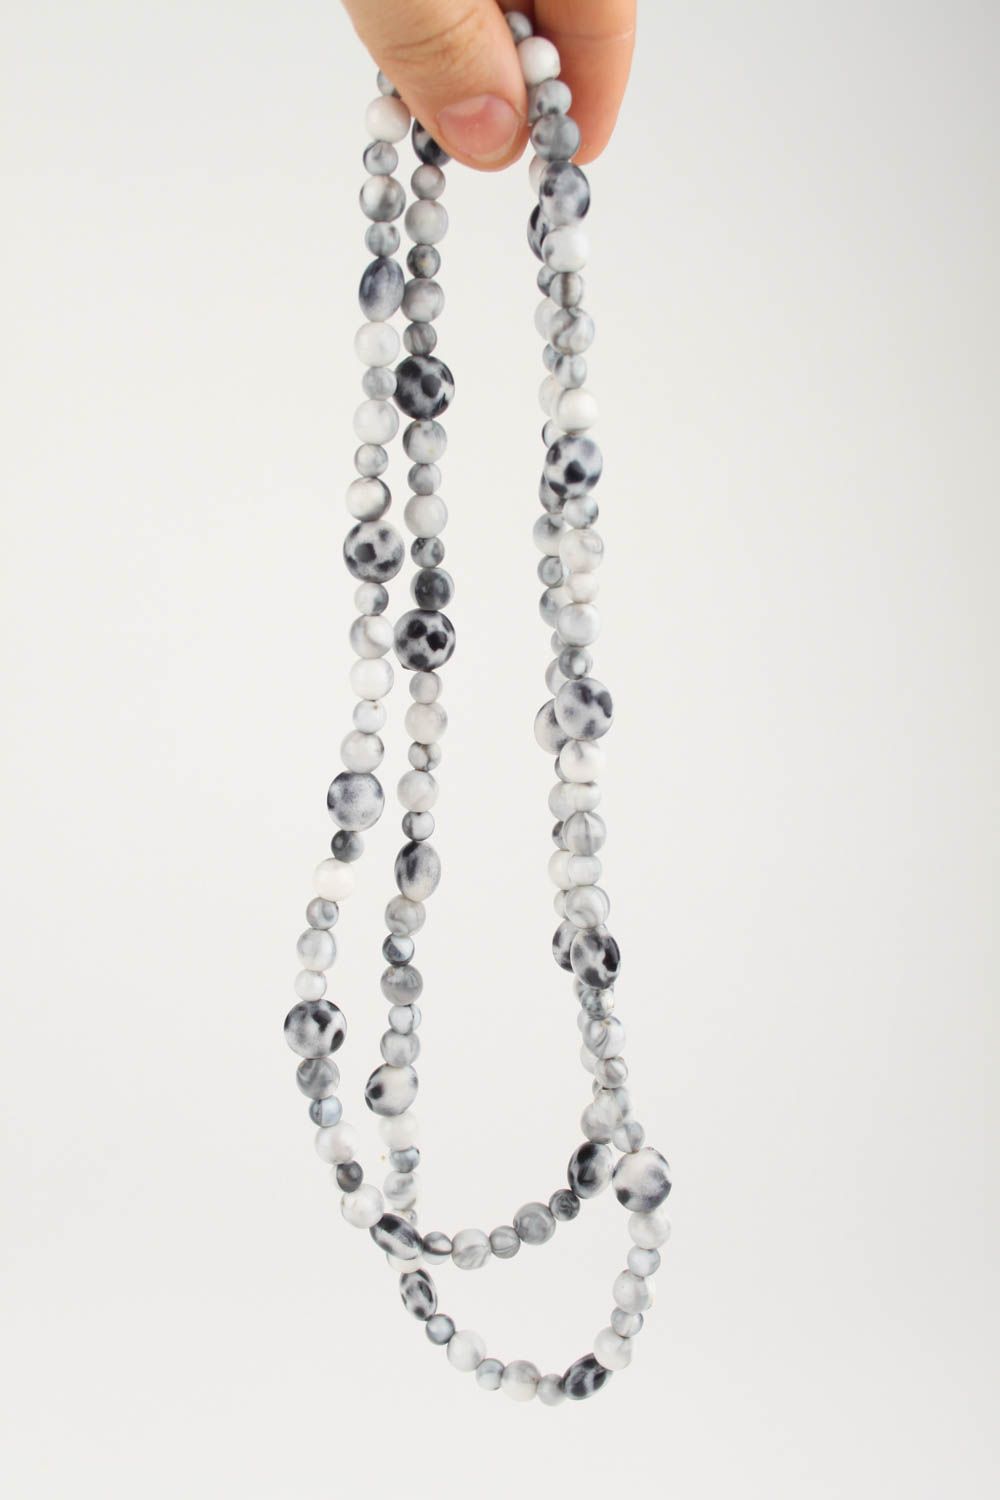 Collier perles fantaisie Bijou fait main gris-blanc 2 rangs Cadeau femme photo 4